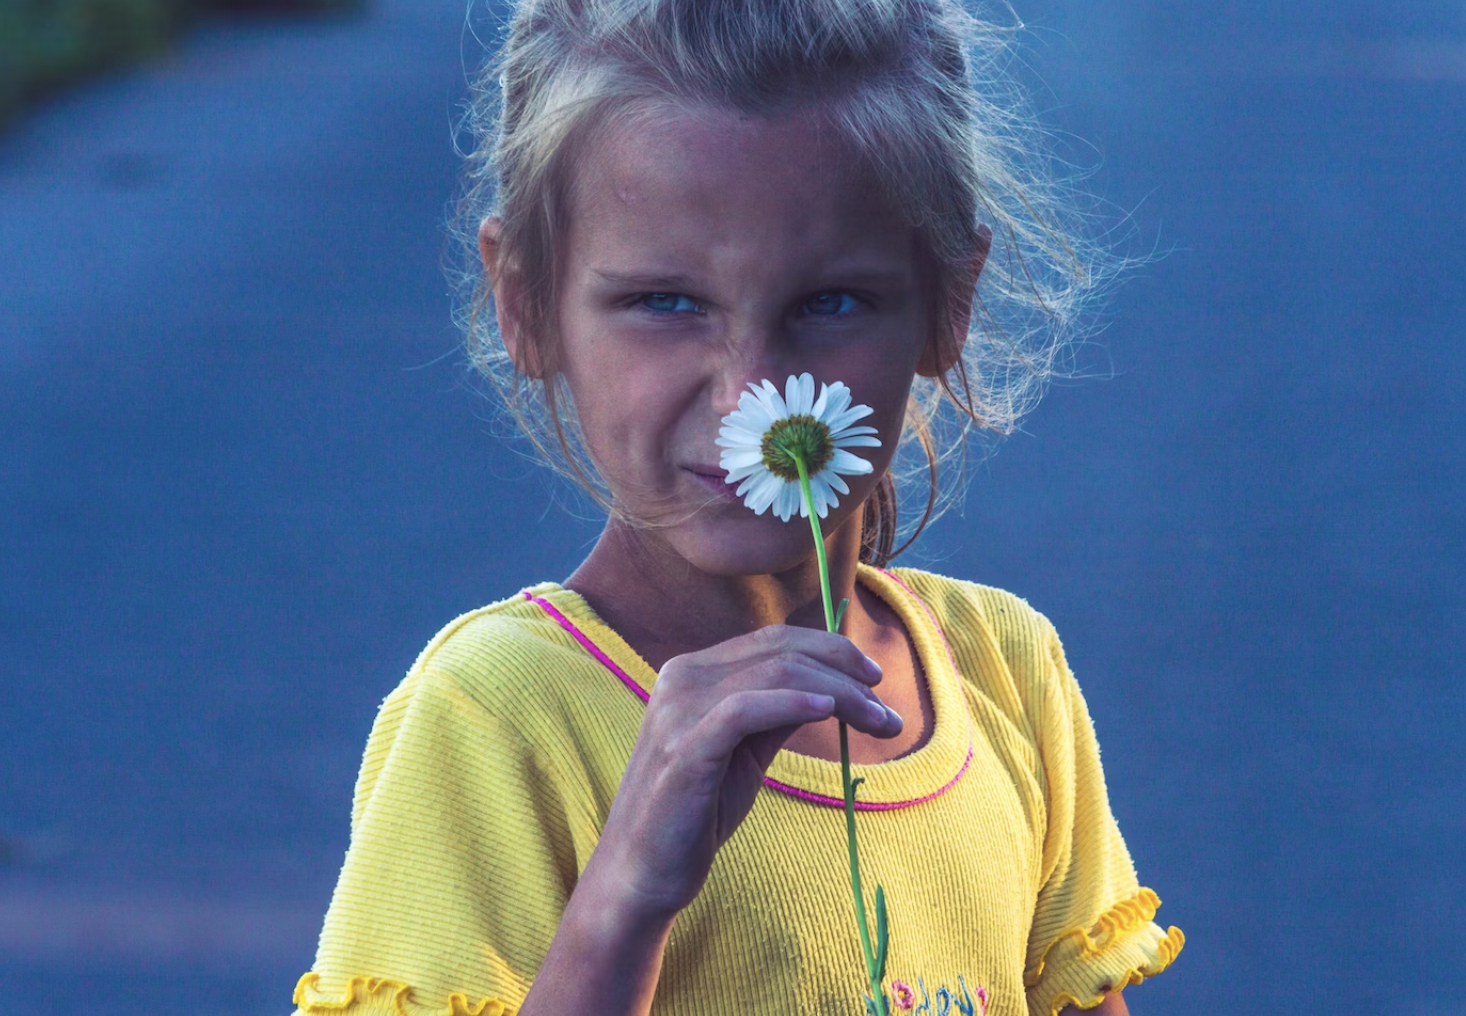 Ромашка — символ Дня семьи, любви и верности, пусть и не всем нравится запах этого цветка. Фото © Vitolda Klein / Unsplash 